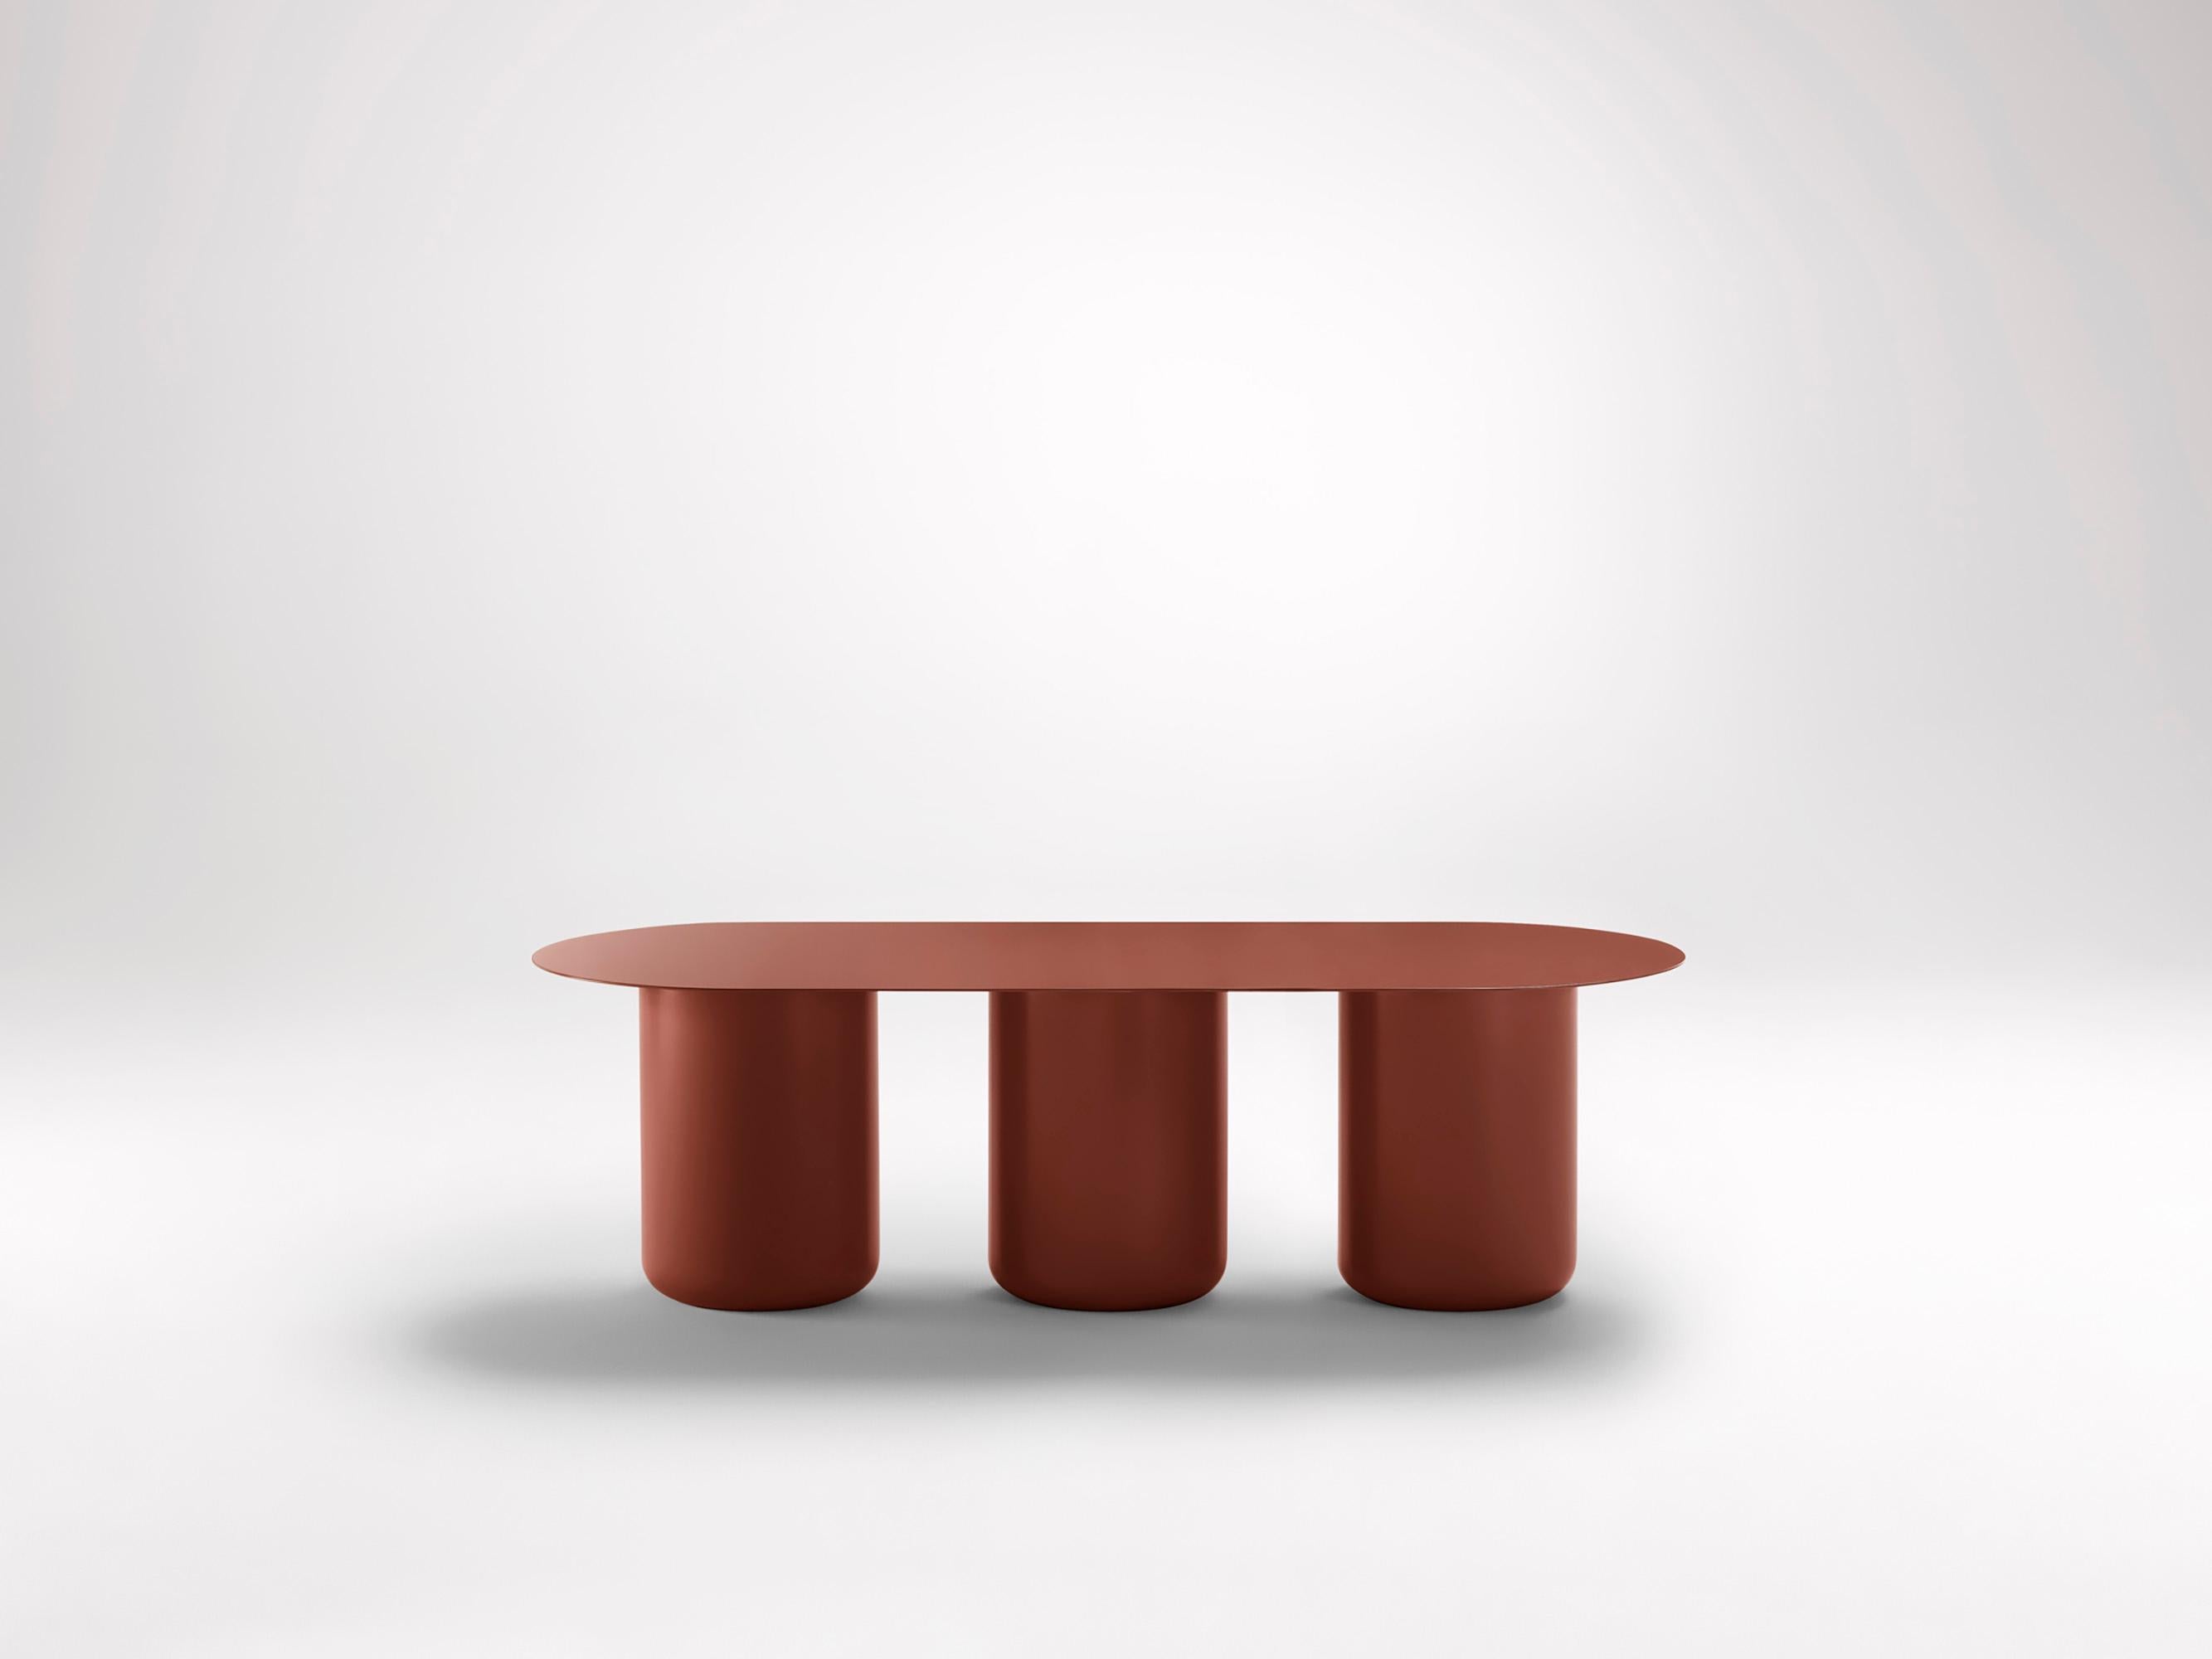 Kopfland-Roter Tisch 03 von Coco Flip
Abmessungen: T 48 / 122 x H 32 / 36 / 40 / 42 cm
MATERIALIEN: Baustahl, pulverbeschichtet mit Zinkgrundierung. 
Gewicht: 30 kg

Coco Flip ist ein Studio für Möbel- und Beleuchtungsdesign in Melbourne, das von